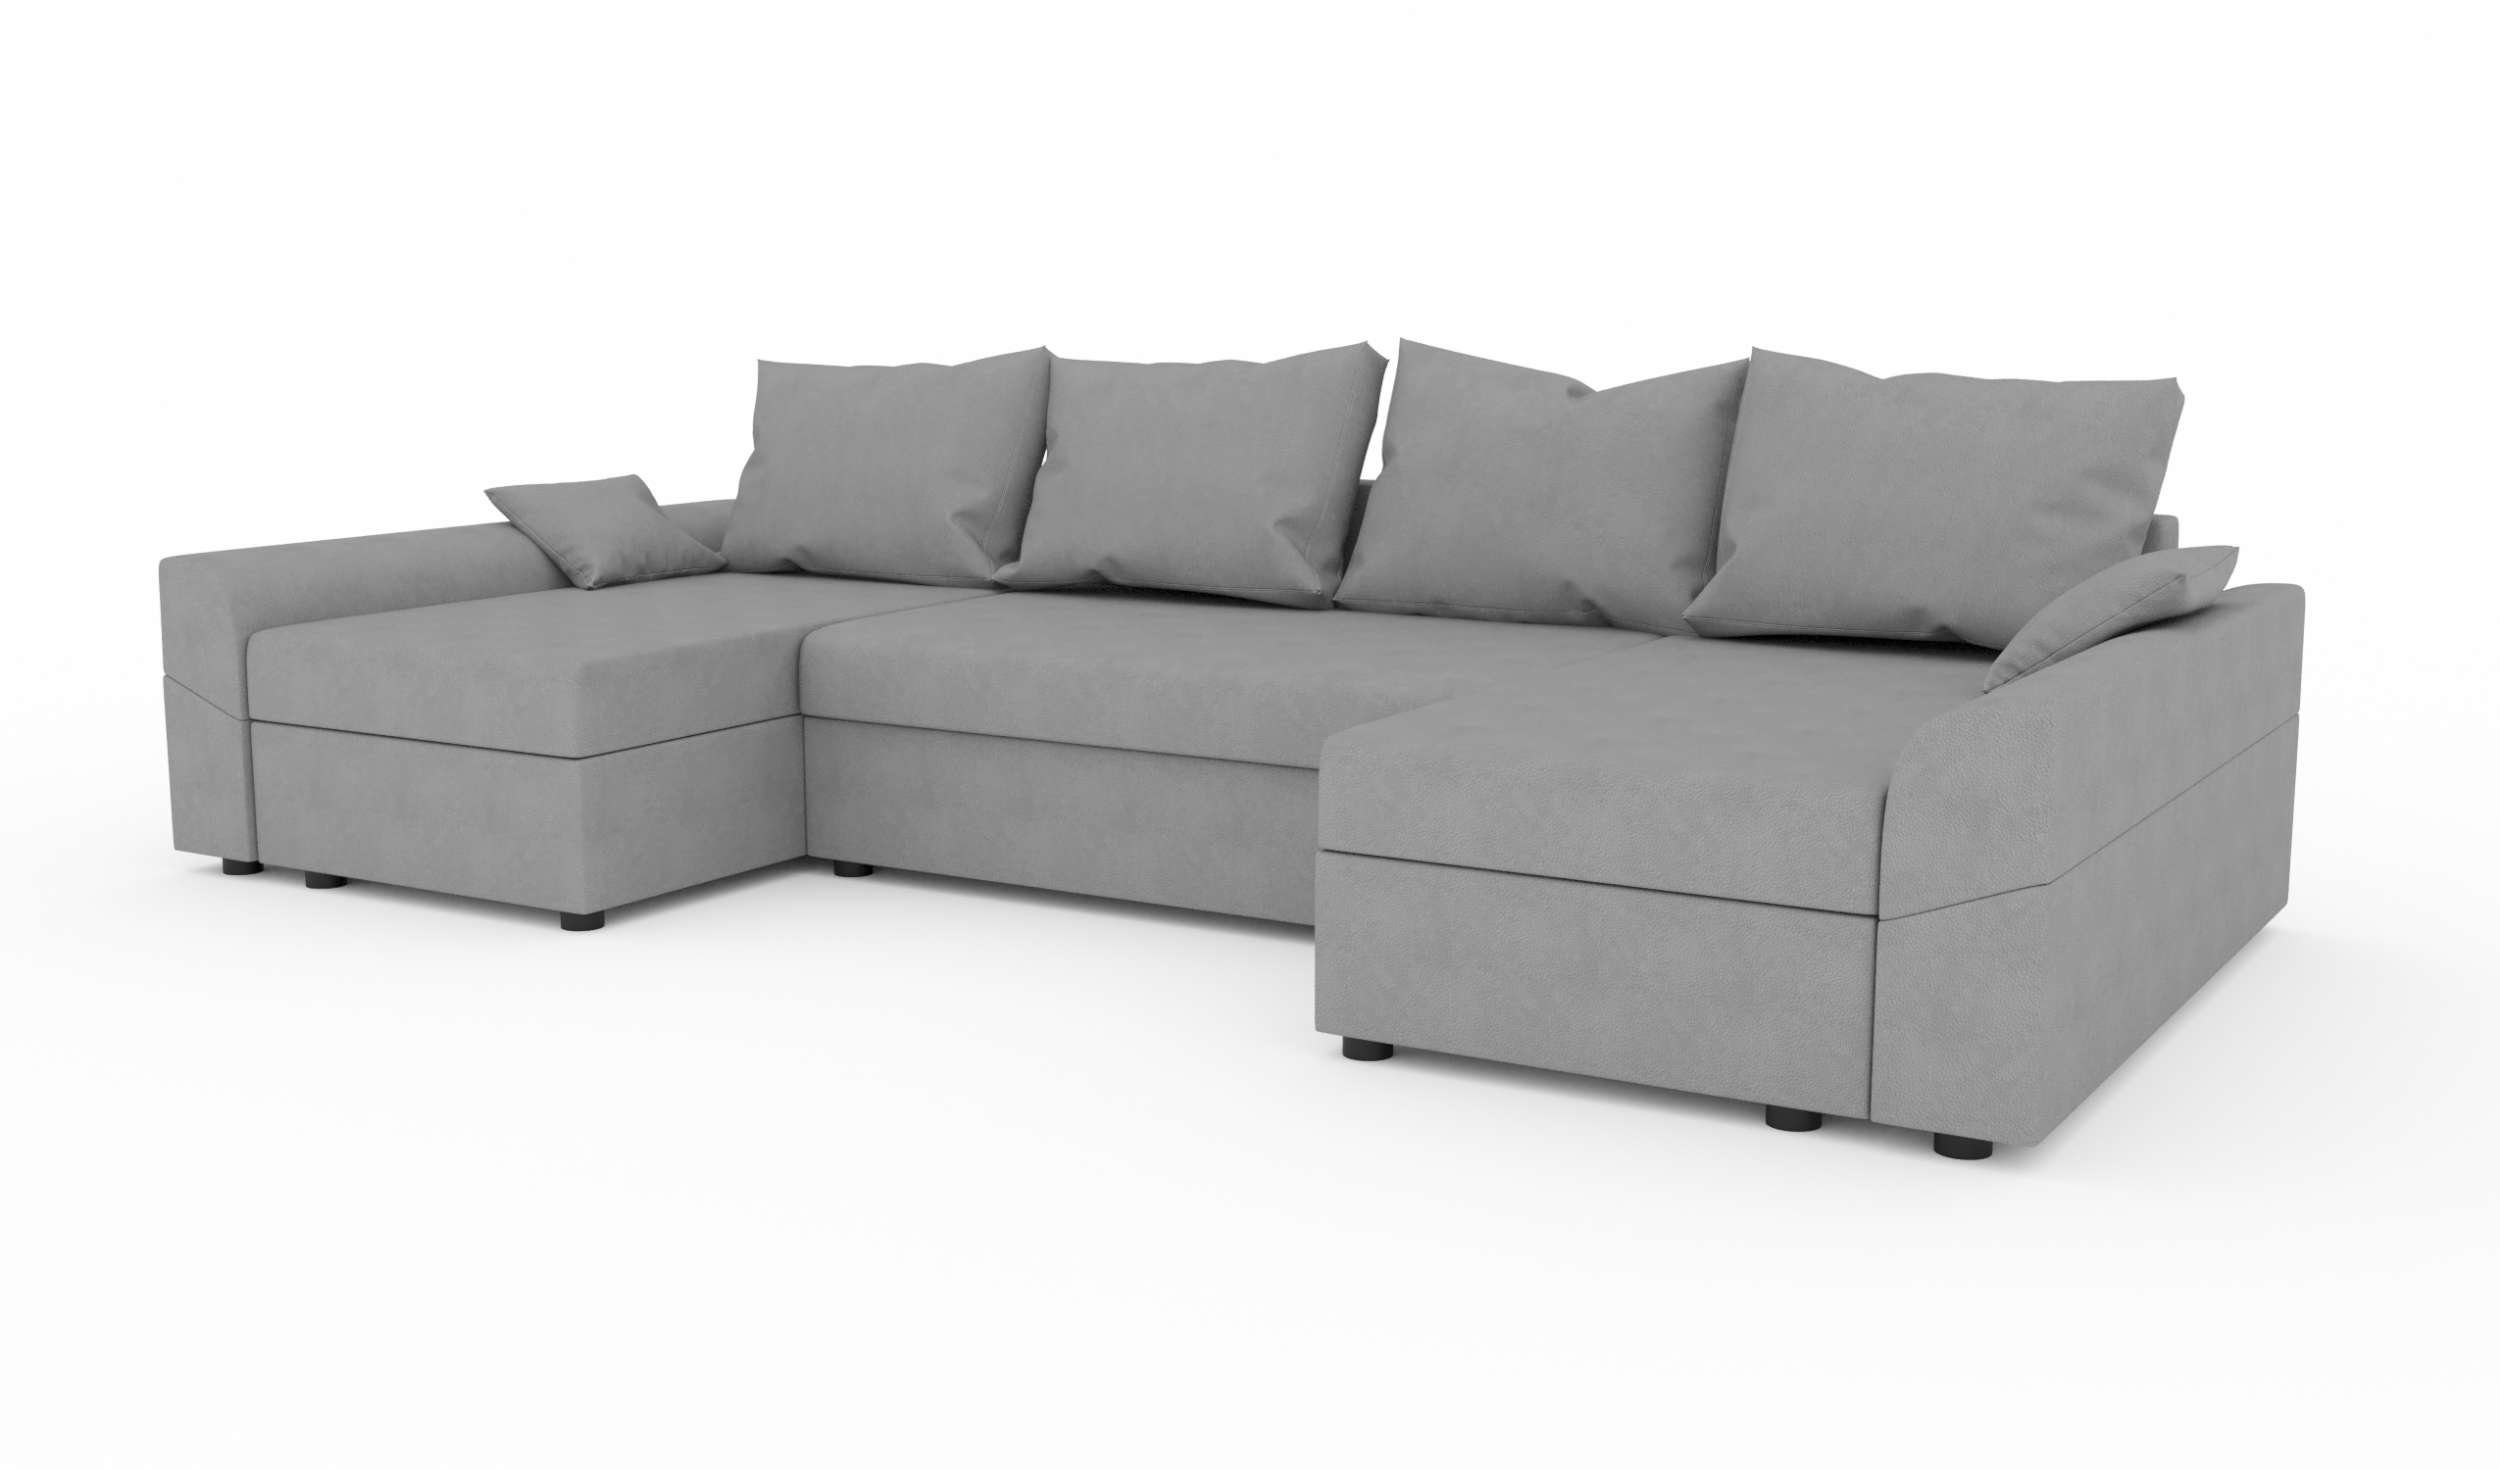 Wohnlandschaft Bettkasten, Sitzkomfort, Sofa, Eckcouch, Carolina, mit U-Form, Design Bettfunktion, Stylefy Modern mit